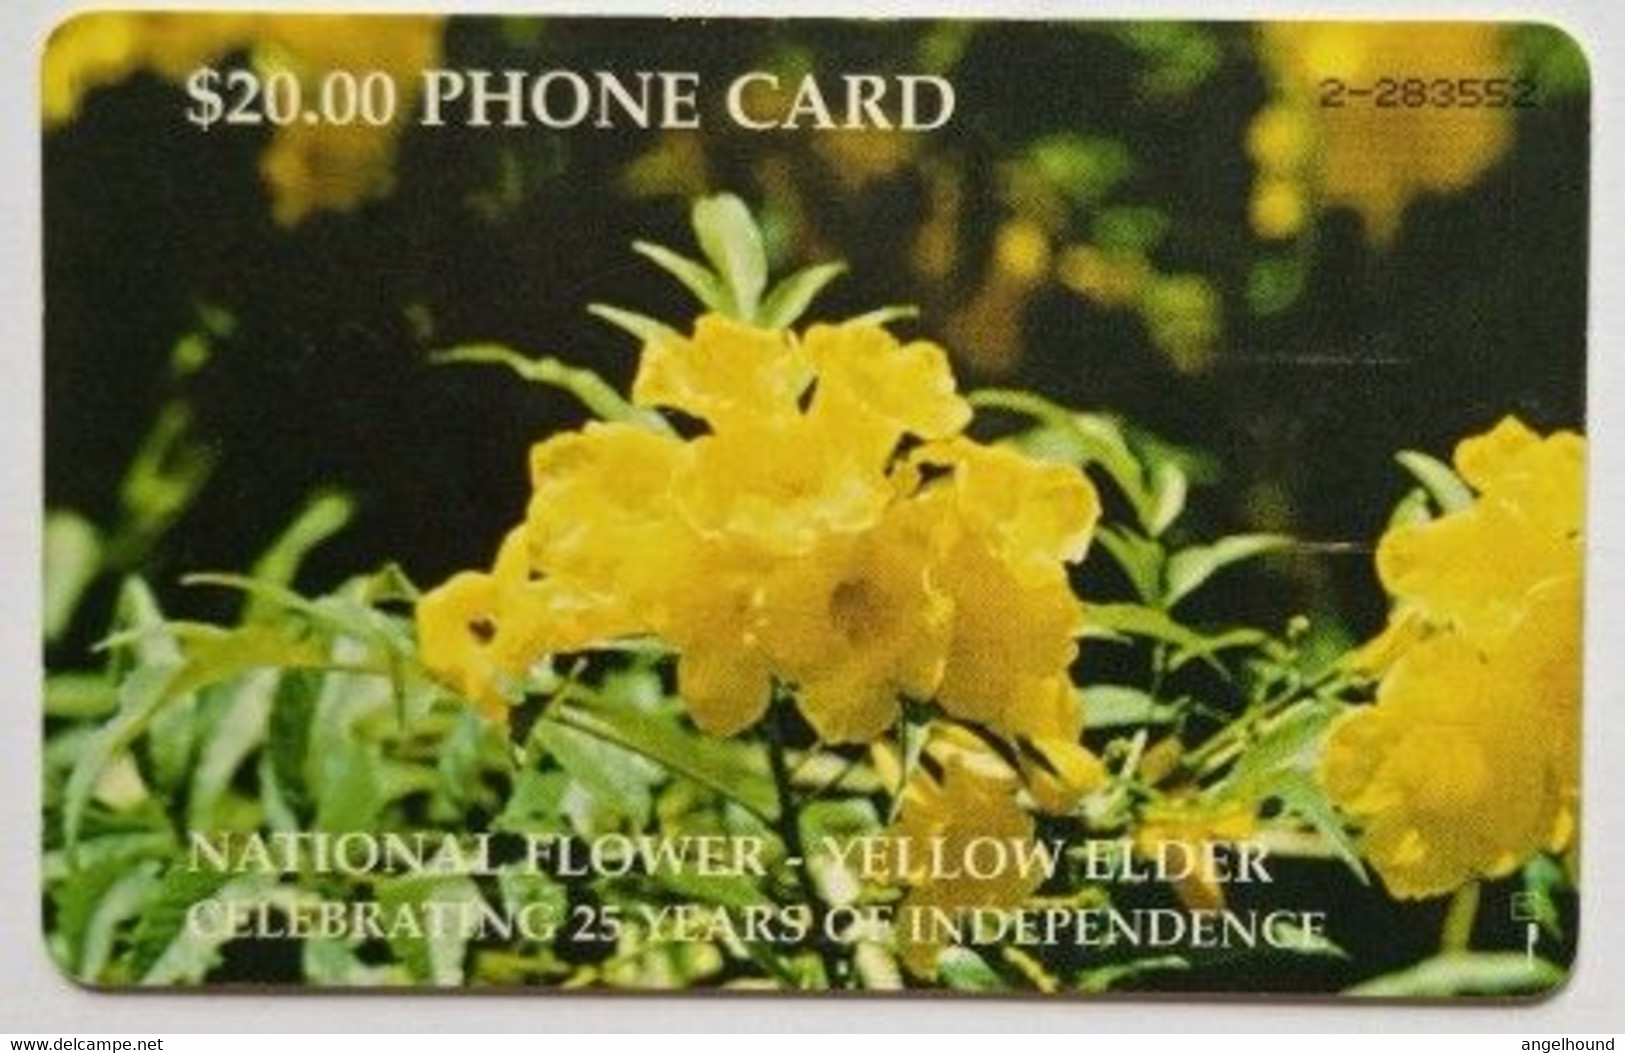 Bahamas $20 National Flower Yellow Elder Celebrating 25 Years Of Independence - Bahama's